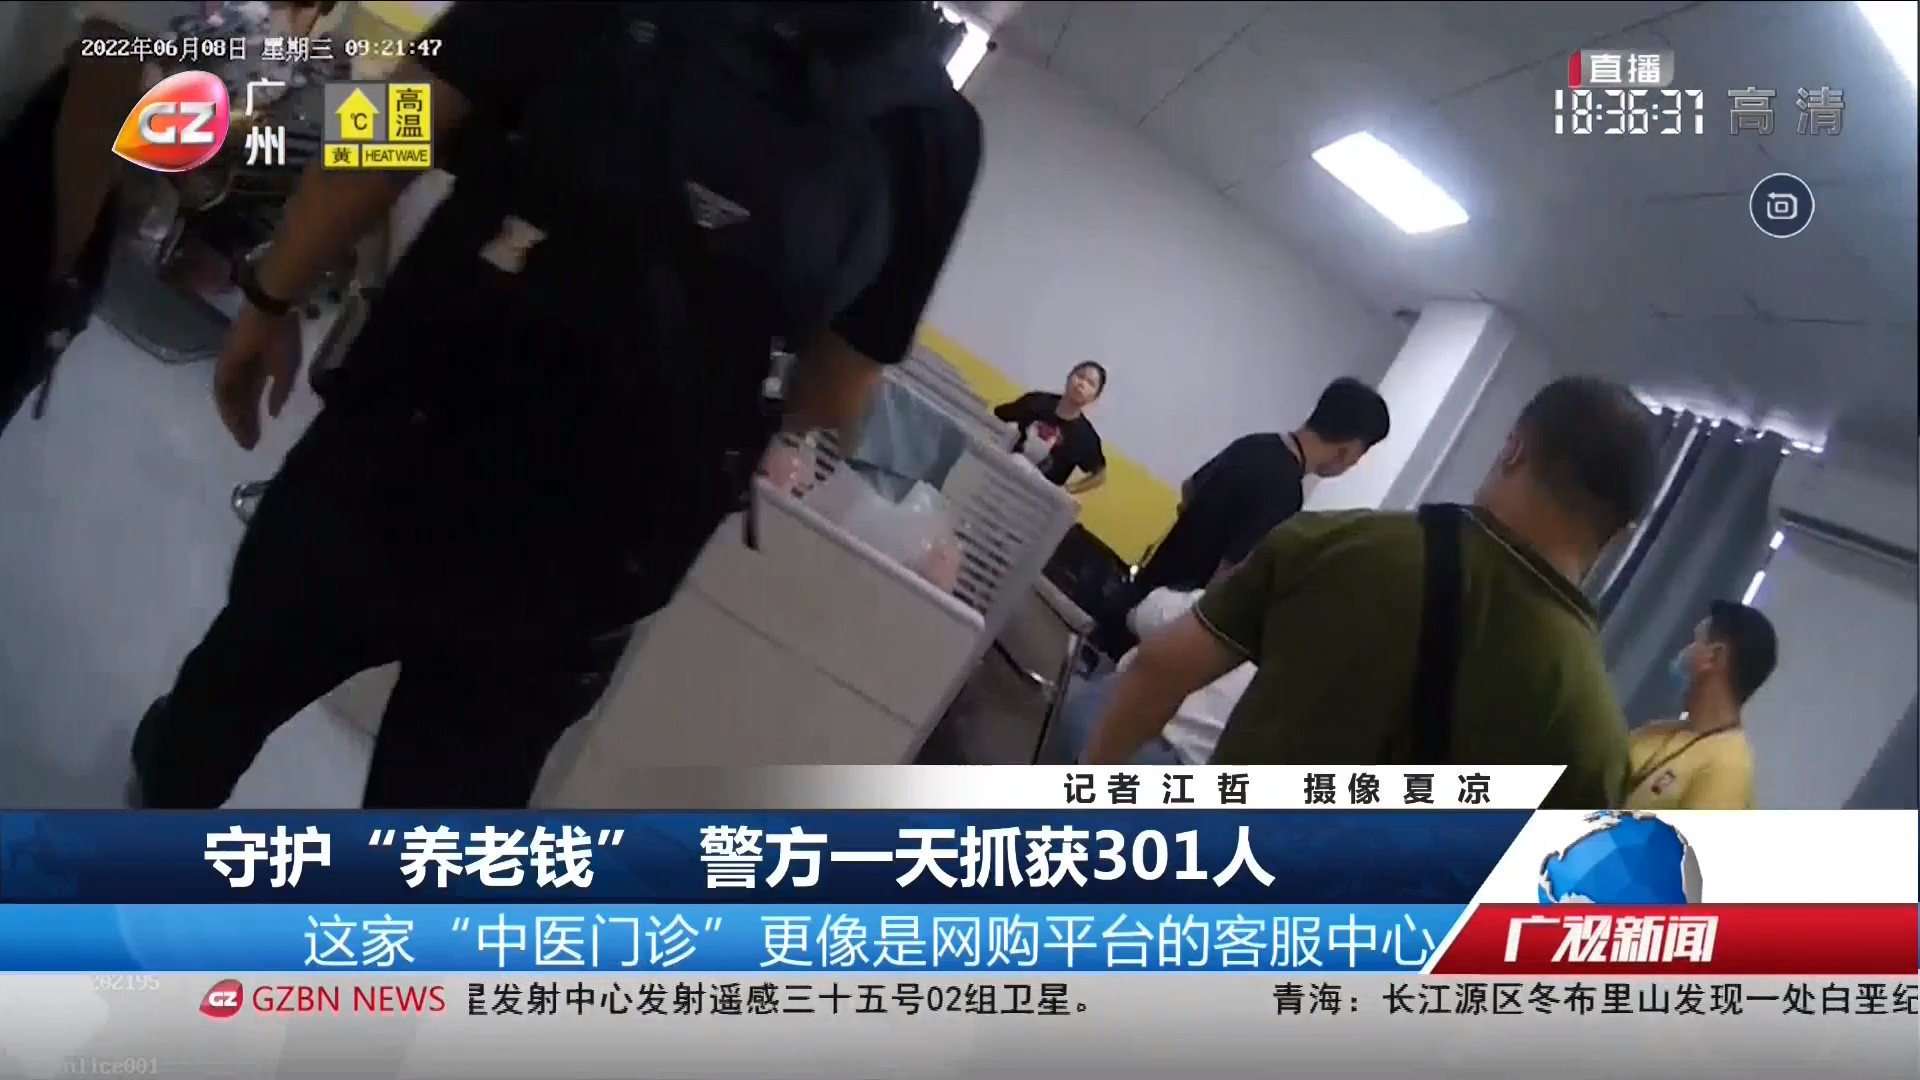 20220623广州台综合频道 广视新闻 守护“养老钱” 警方一天抓获301人